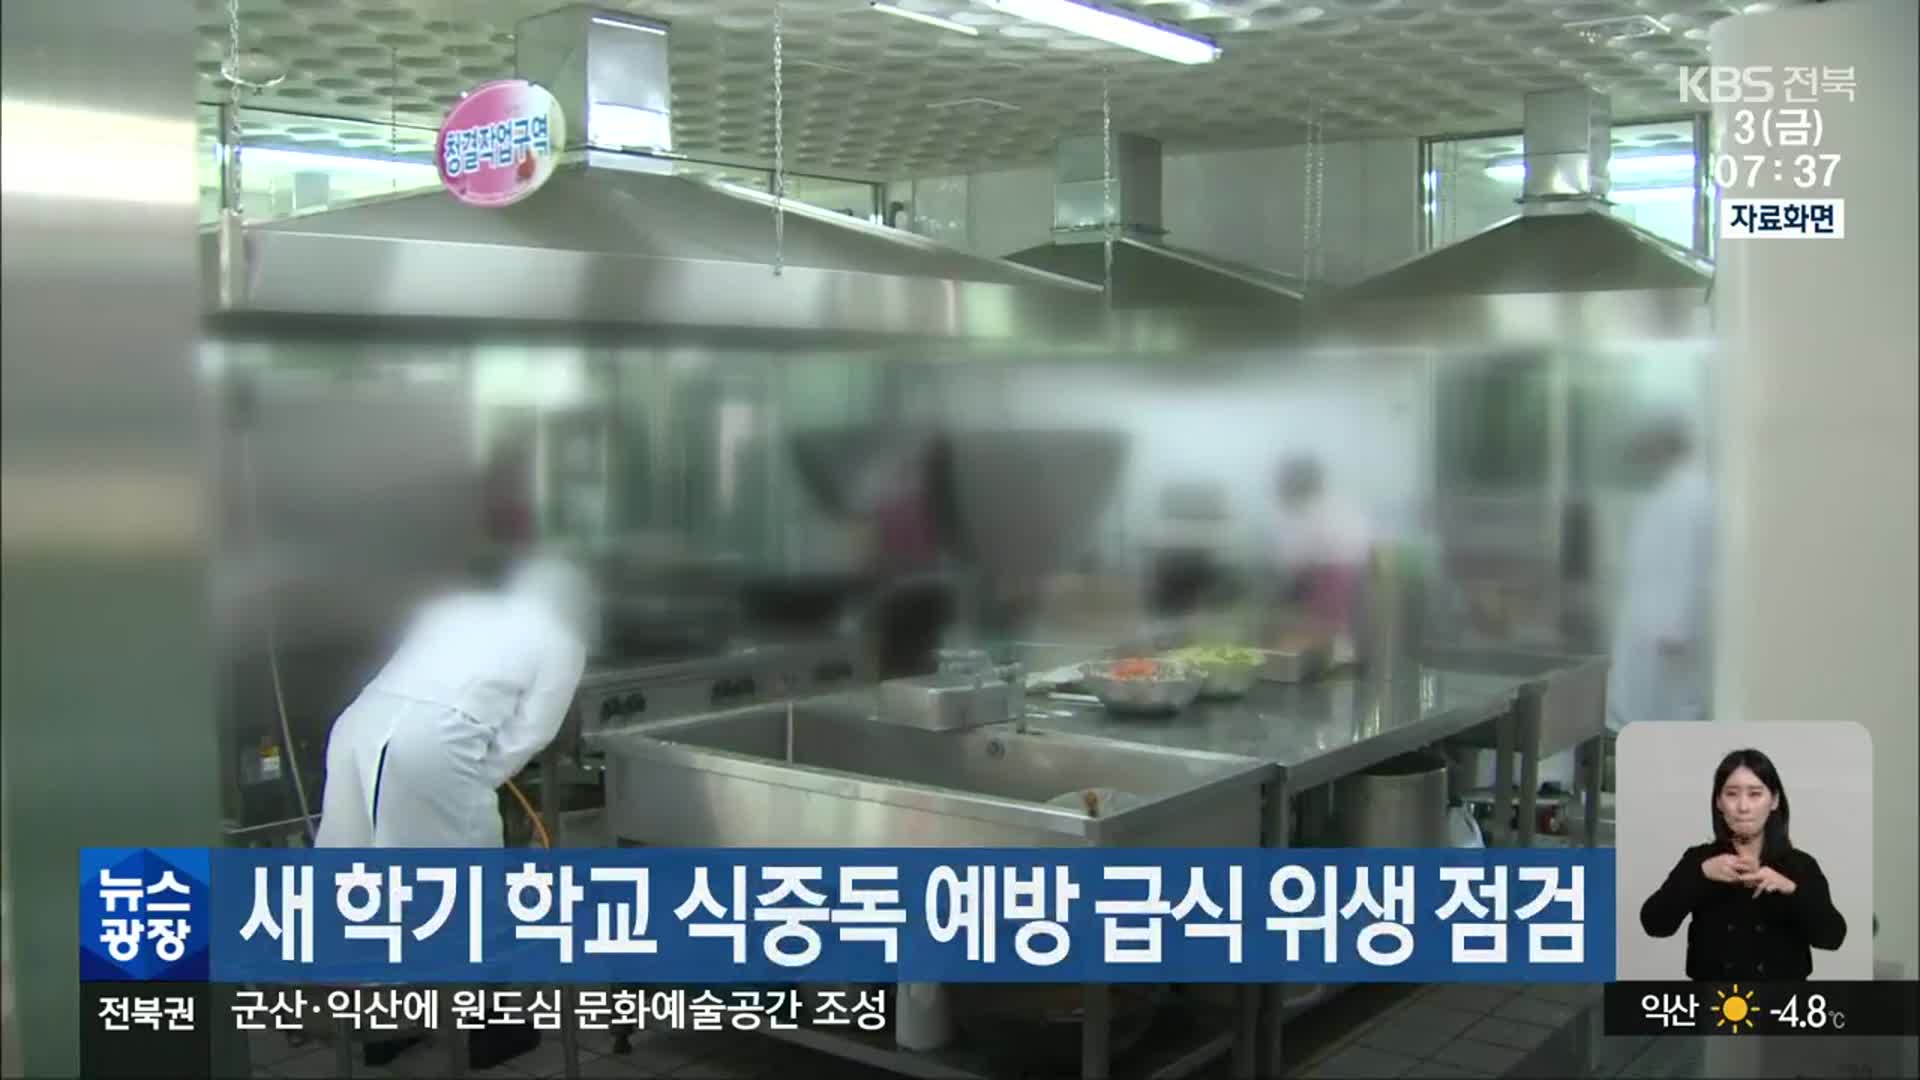 새 학기 학교 식중독 예방 급식 위생 점검